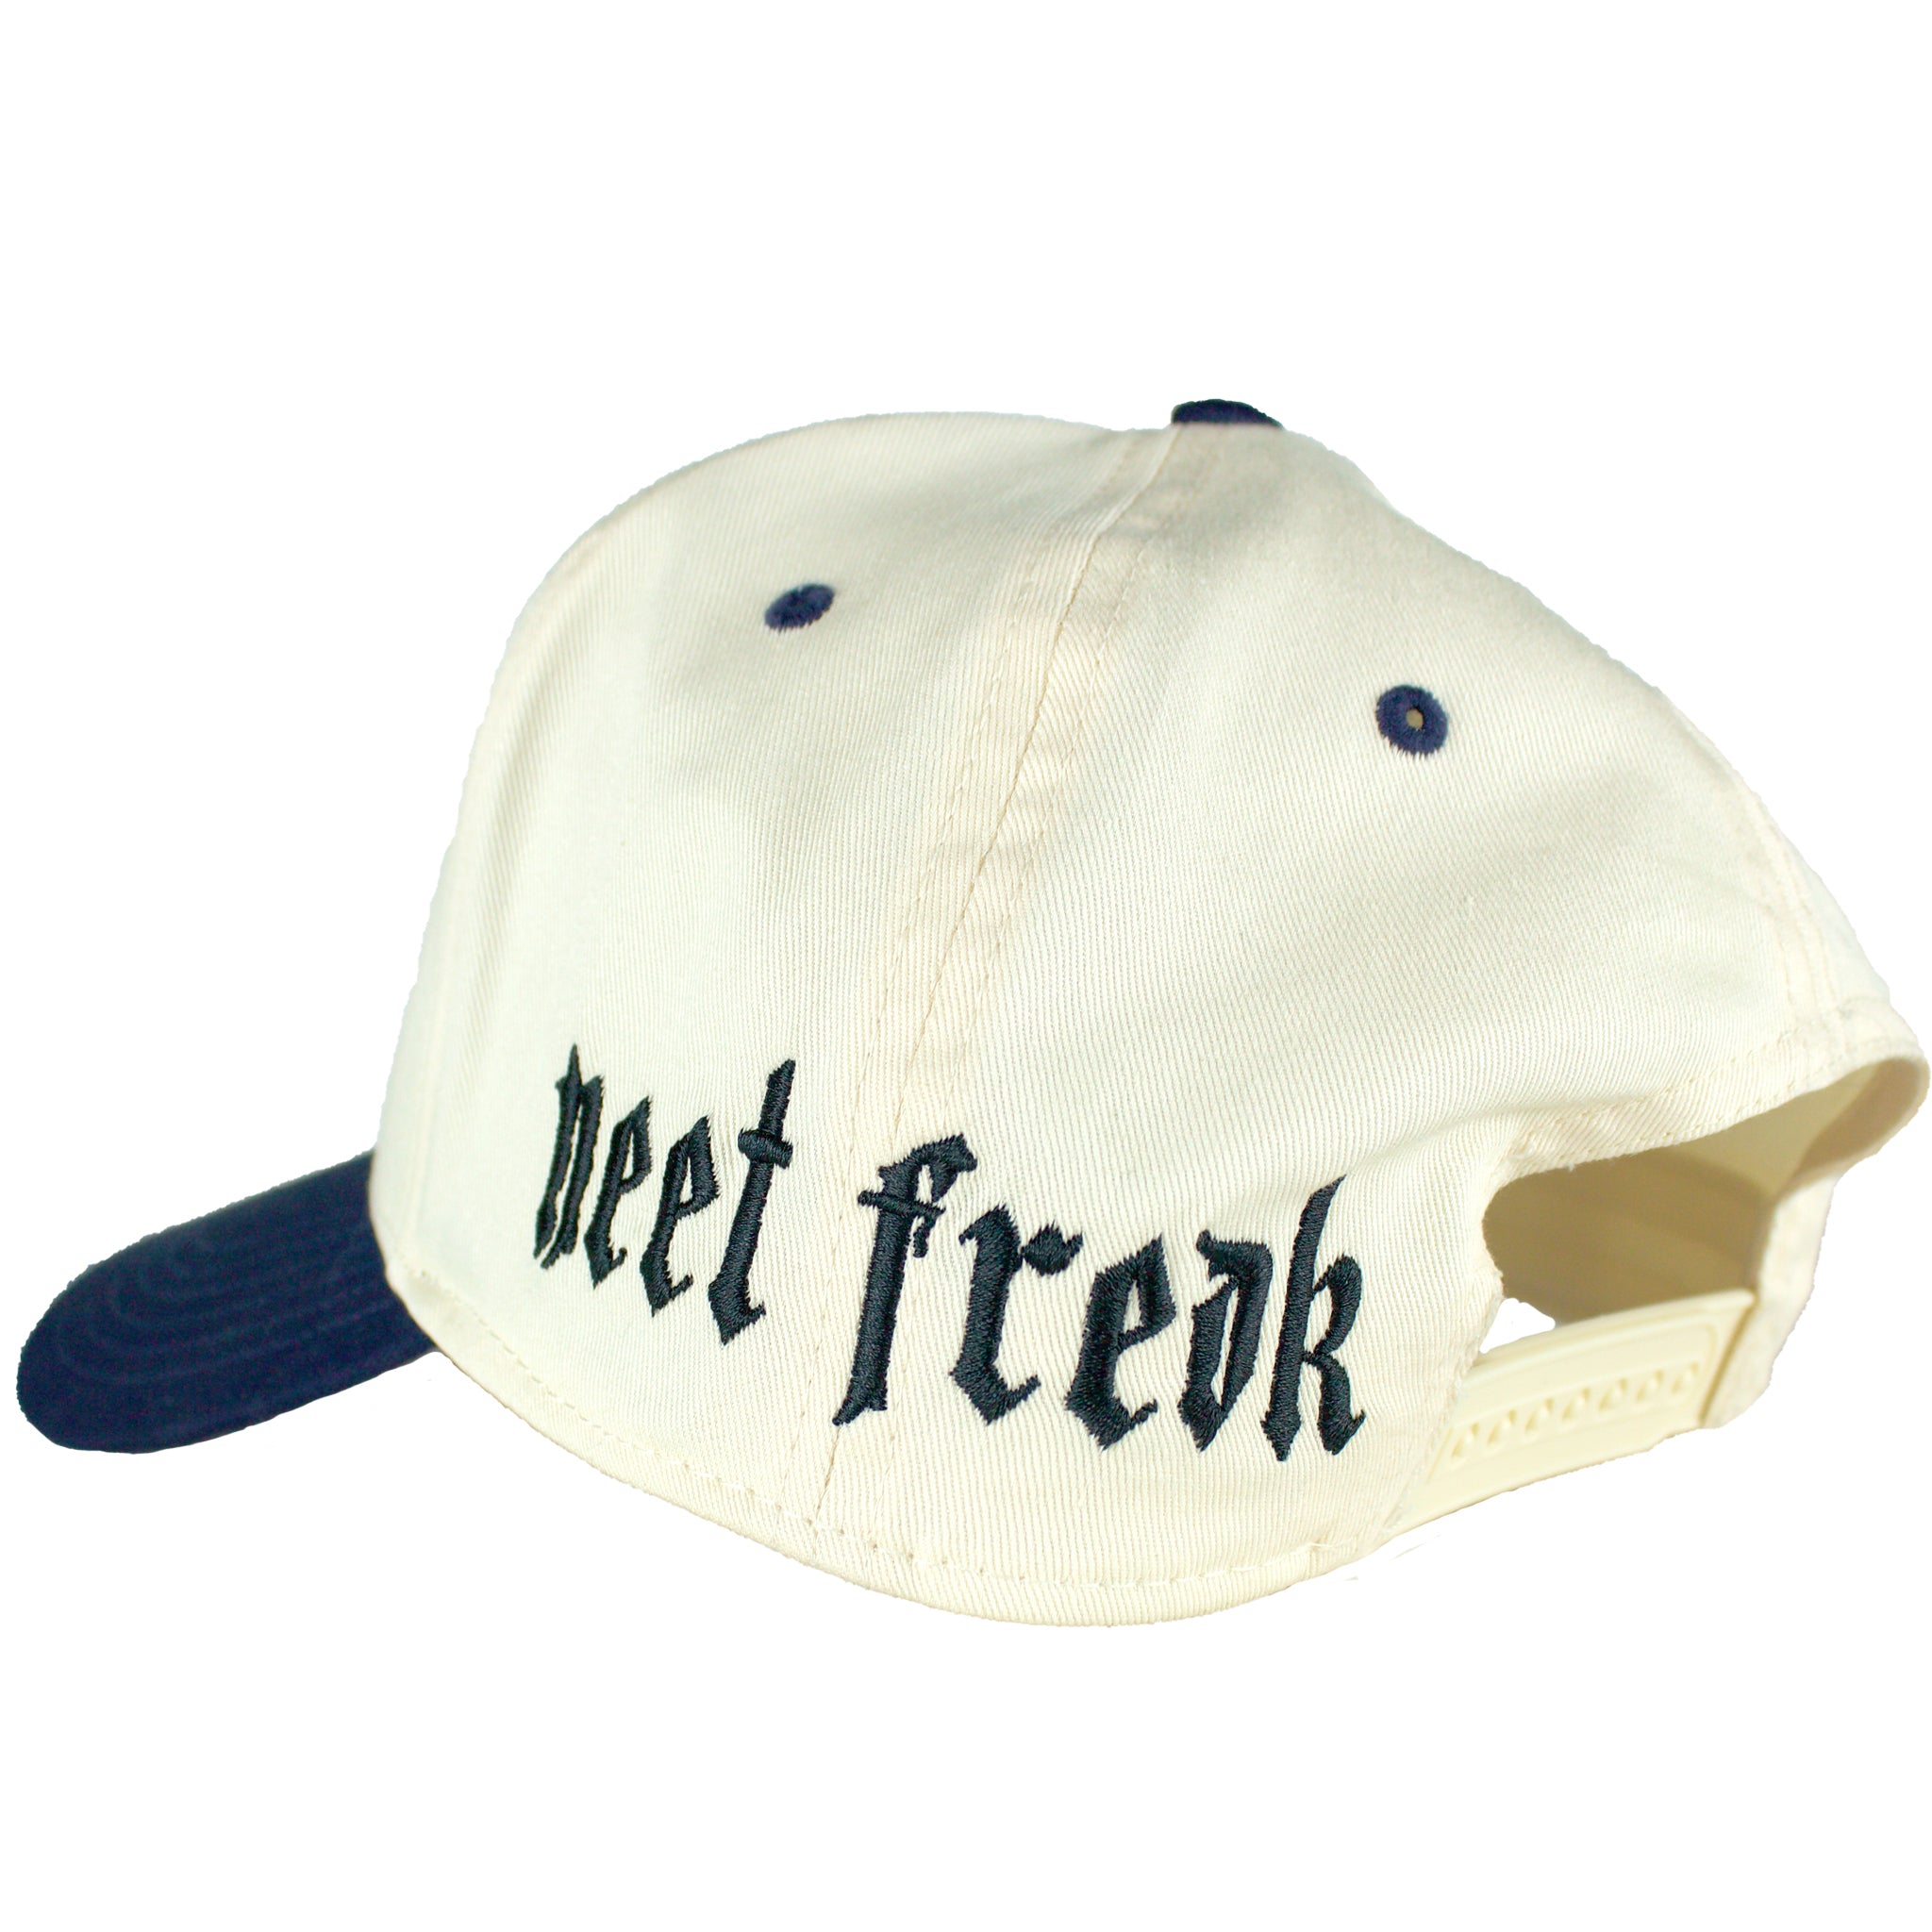 trucker hat mens. mens trucker hat. Blue and white trucker hat. - Neet Freak Clothing